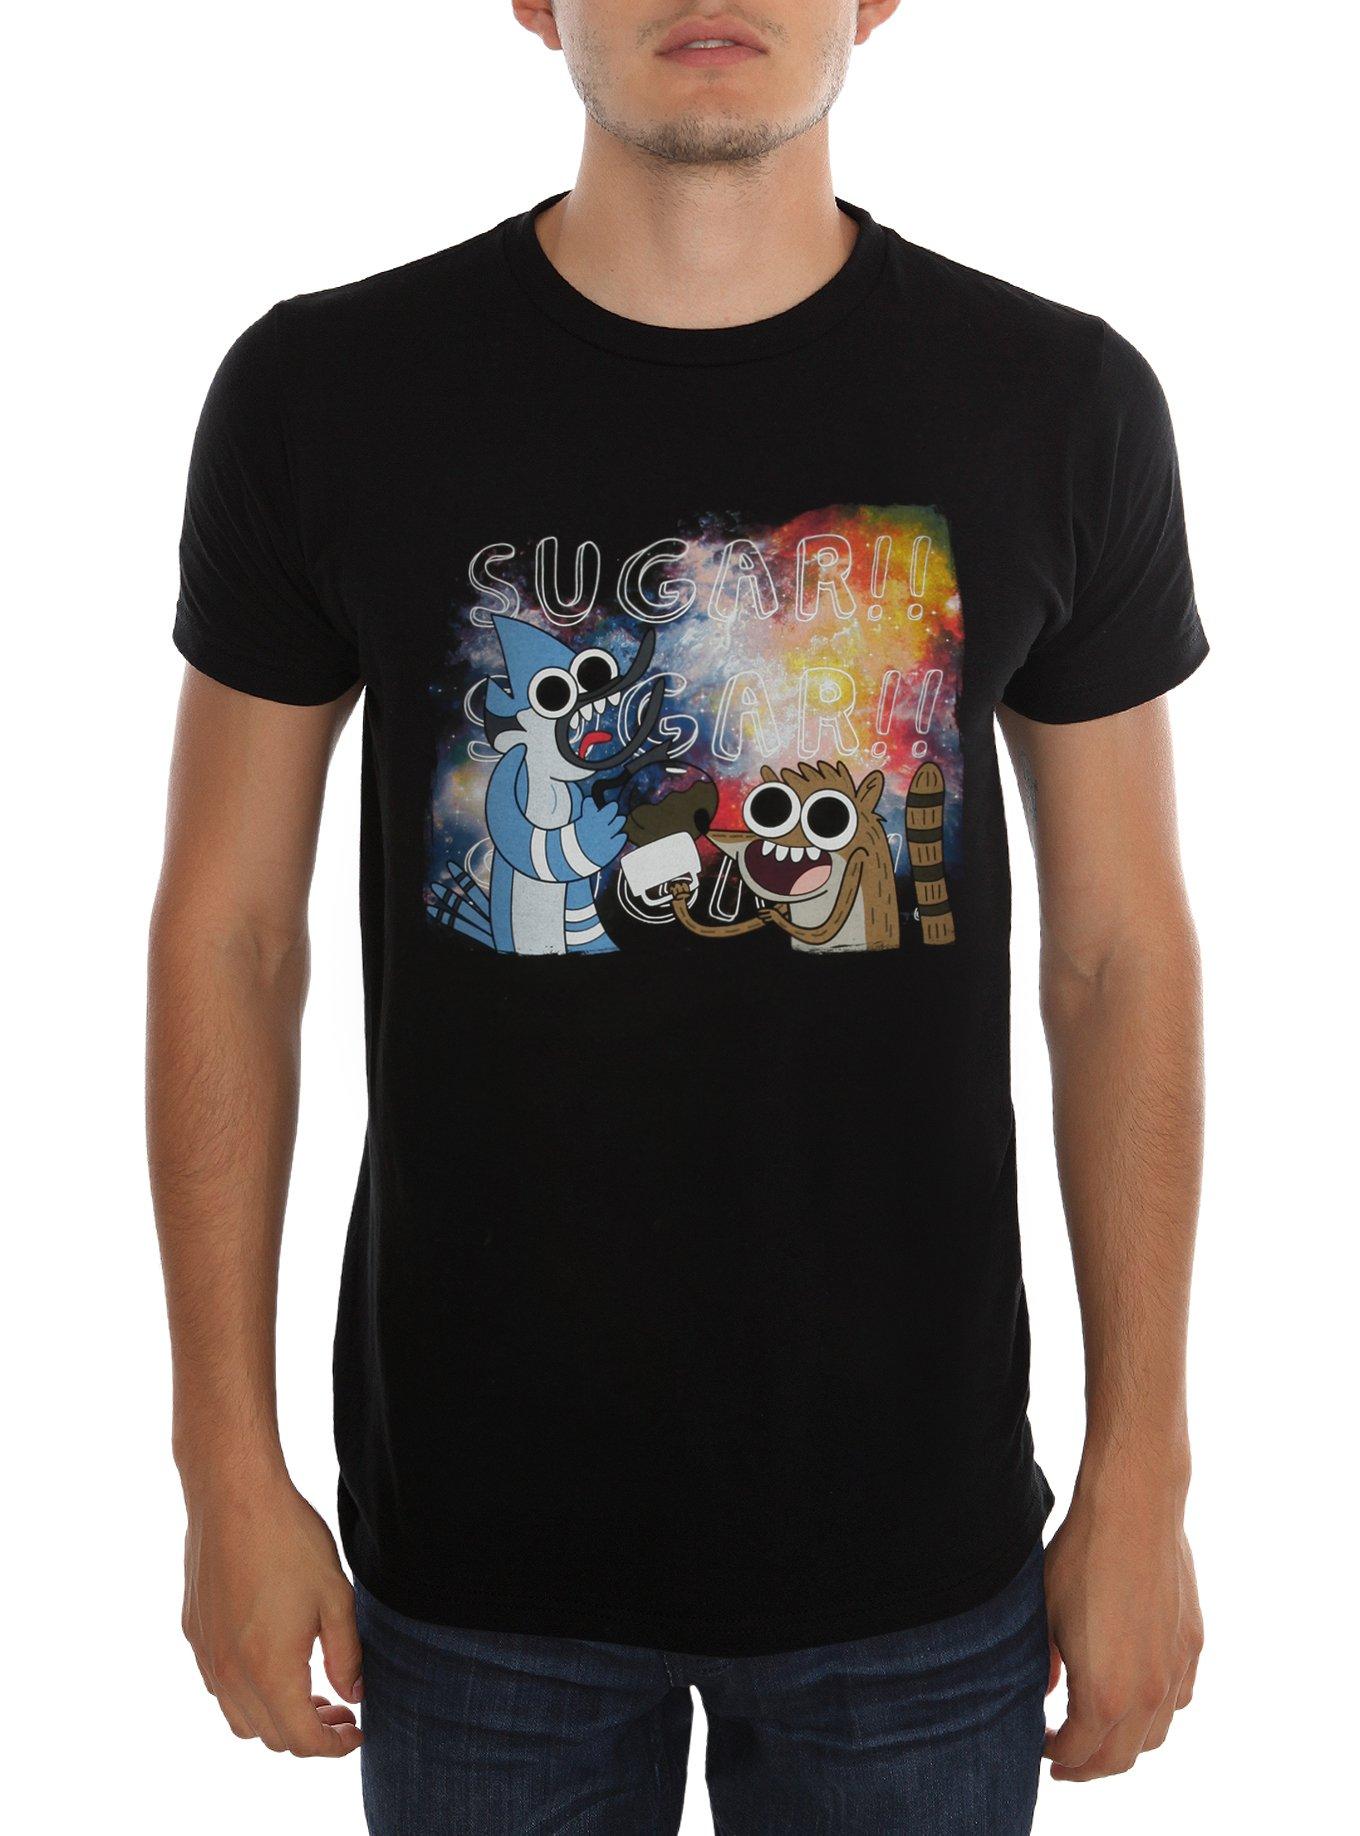 Regular Show Mordecai And Rigby Sugar T-Shirt, , hi-res